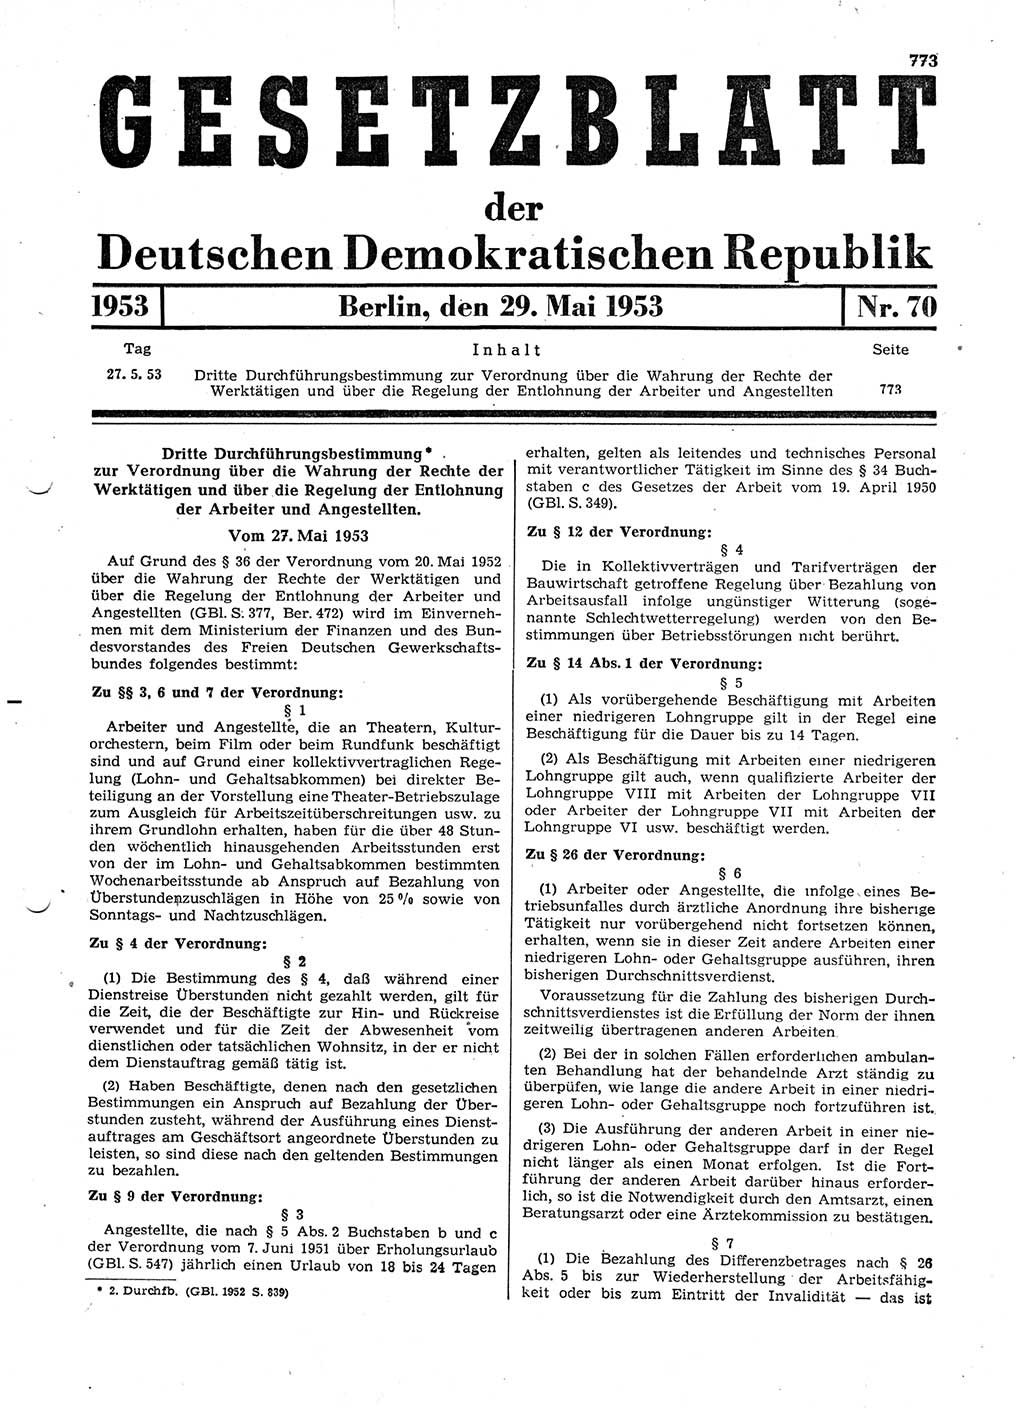 Gesetzblatt (GBl.) der Deutschen Demokratischen Republik (DDR) 1953, Seite 773 (GBl. DDR 1953, S. 773)